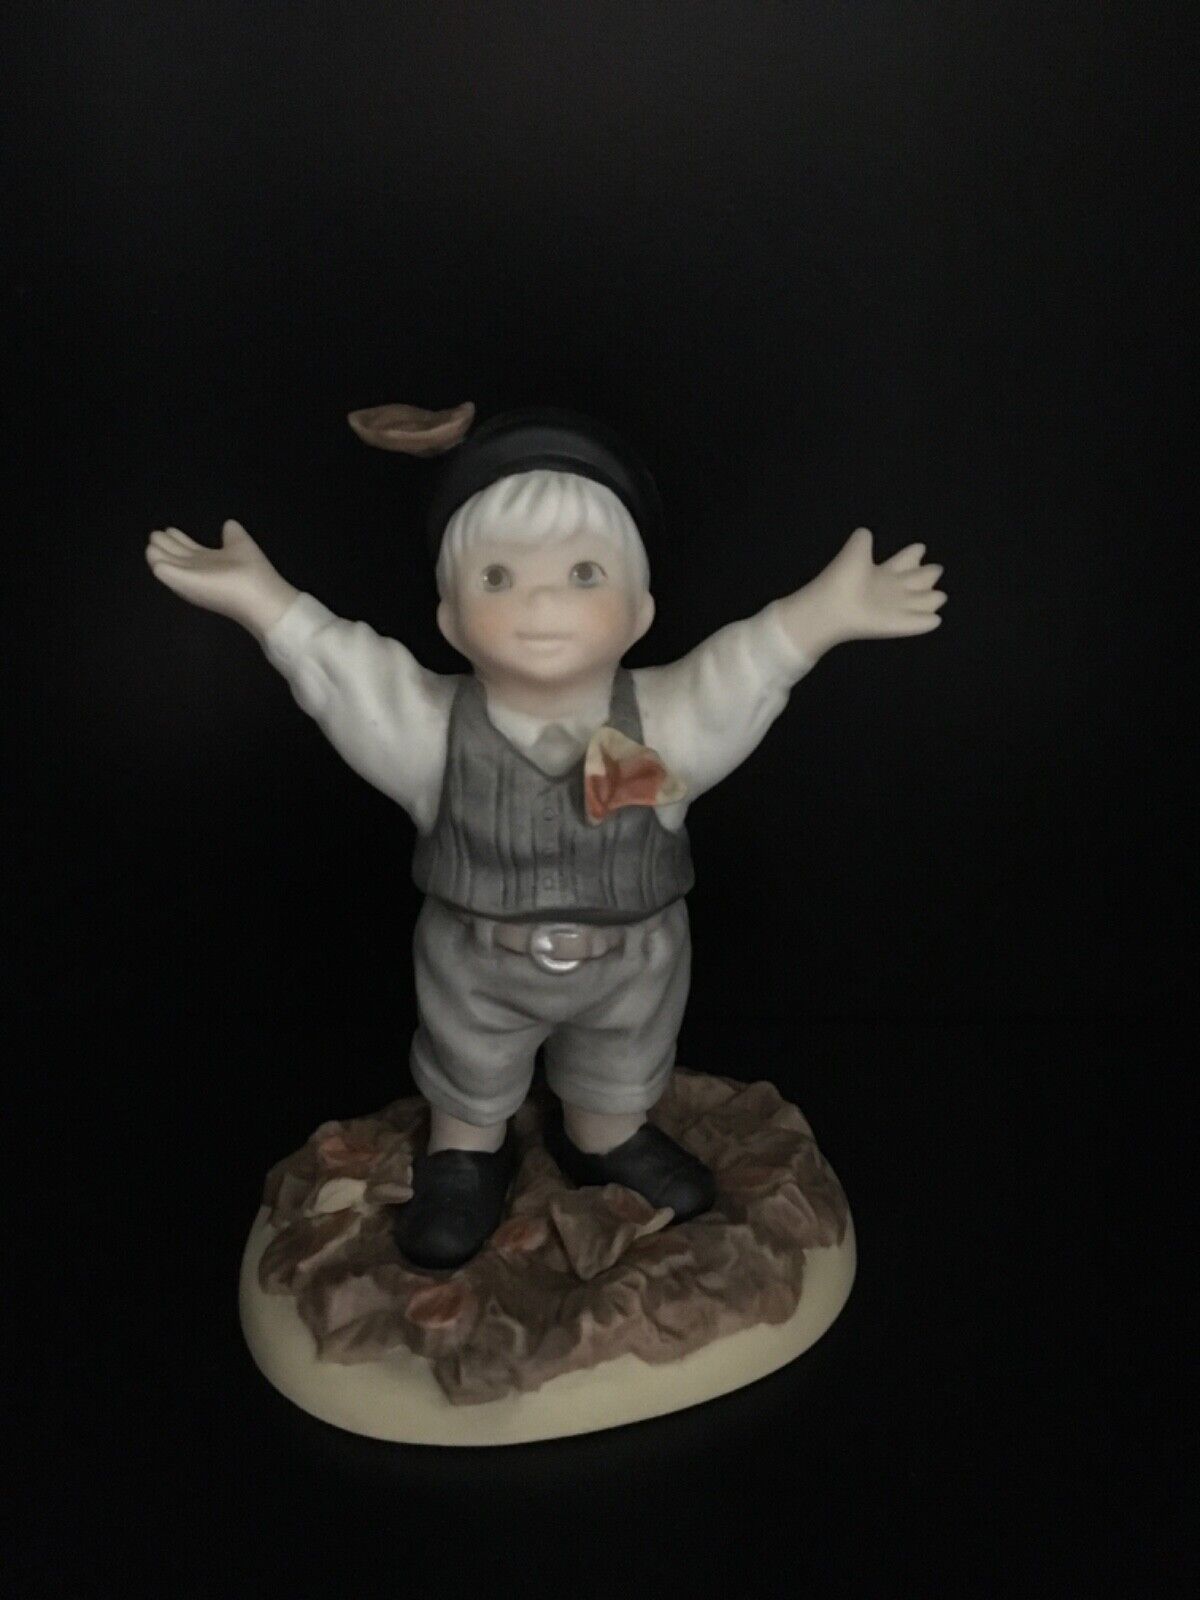 2000 NBM Bahner Studio Ceramic Statue Figure “Celebrate Life” Enesco 703389